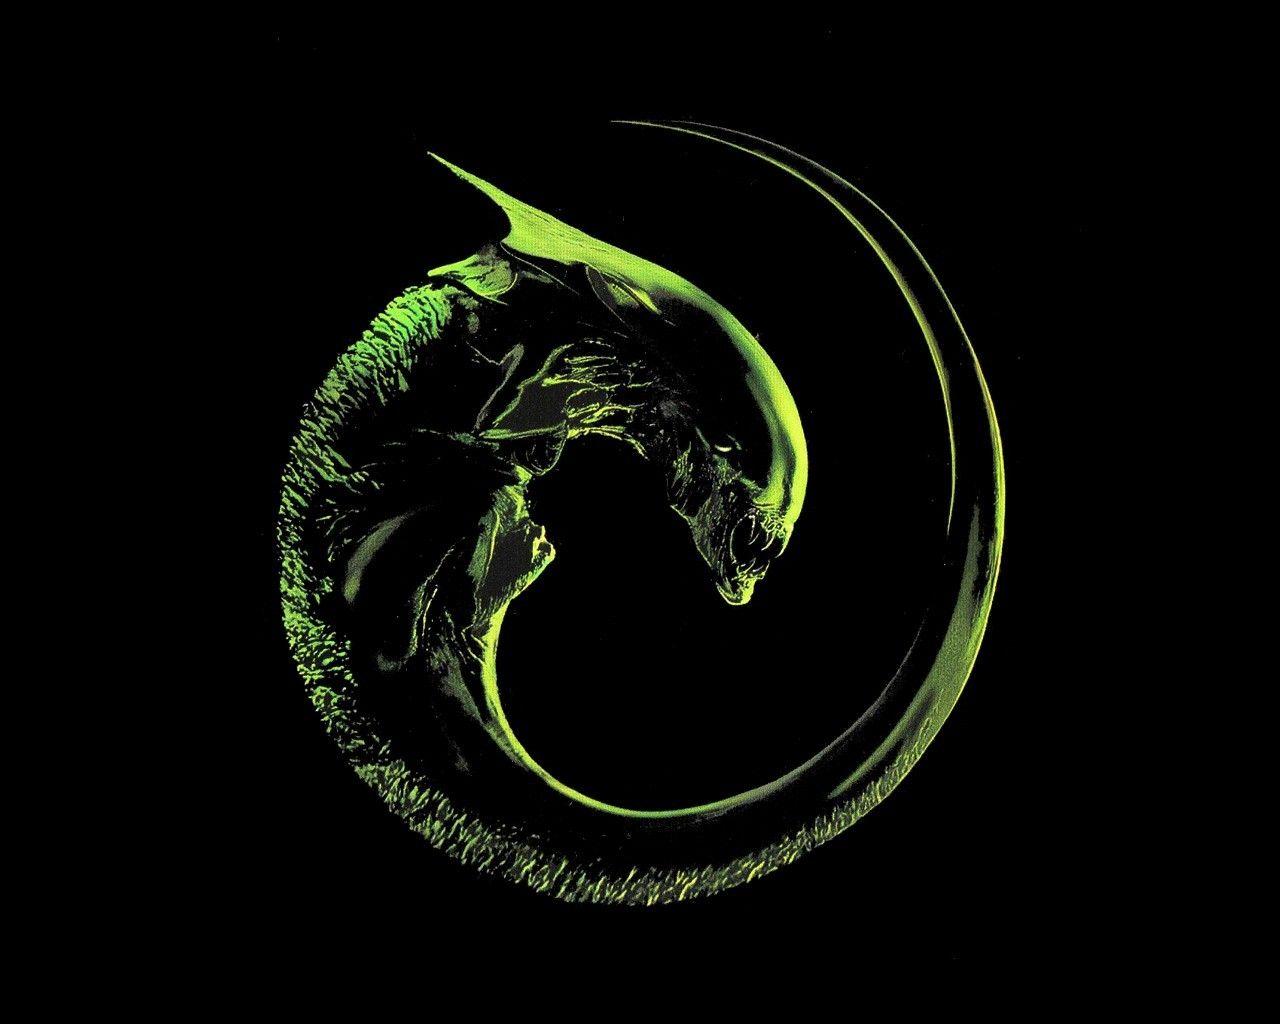 Alien Computer Logo - Wallpaper : illustration, spiral, logo, circle, Alien movie, aliens ...